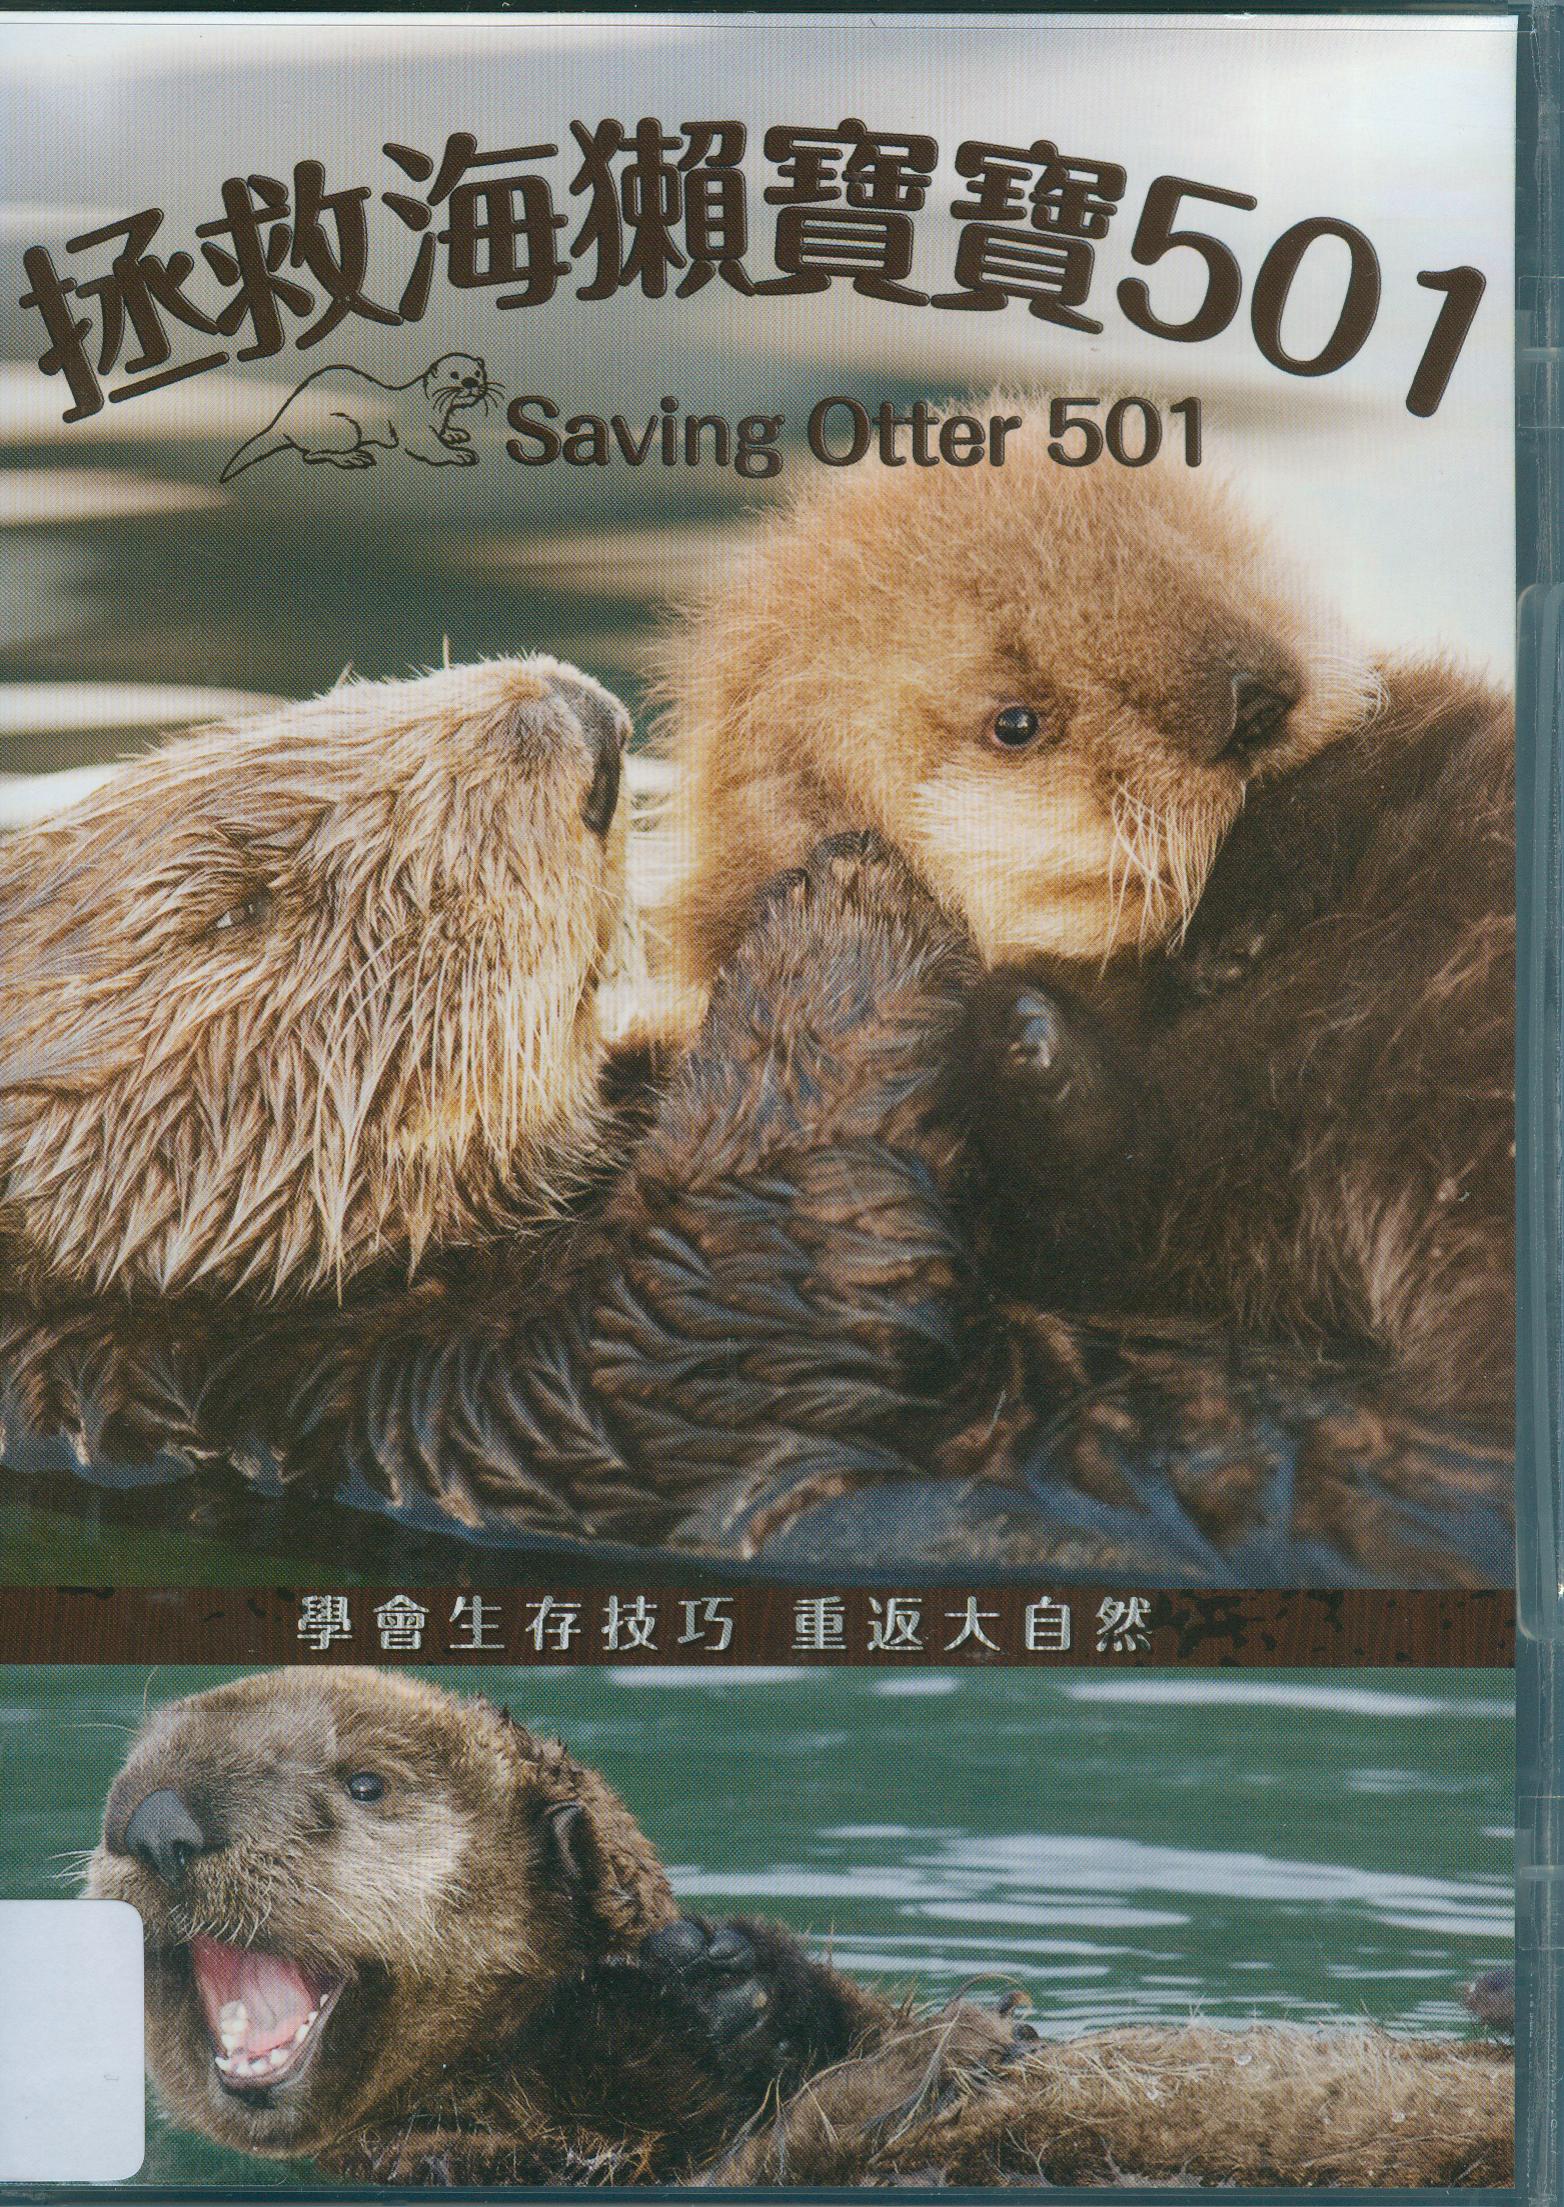 拯救海獺寶寶501 : Saving otter 501